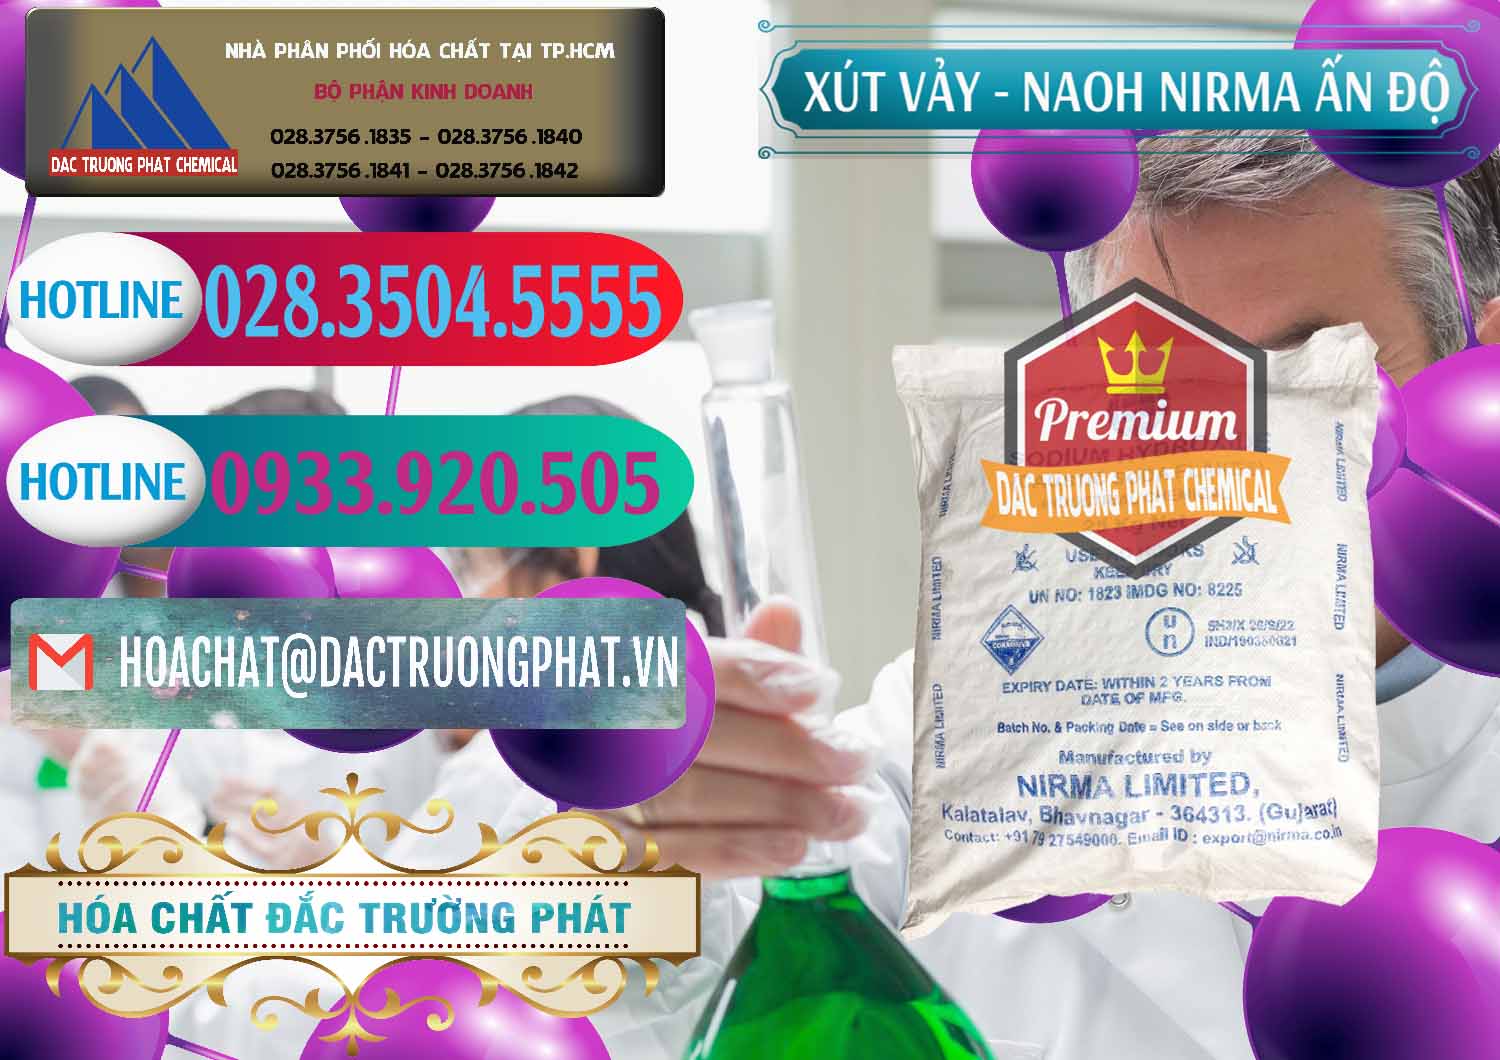 Cty nhập khẩu và bán Xút Vảy - NaOH Vảy Nirma Ấn Độ India - 0371 - Cty chuyên kinh doanh - phân phối hóa chất tại TP.HCM - truongphat.vn